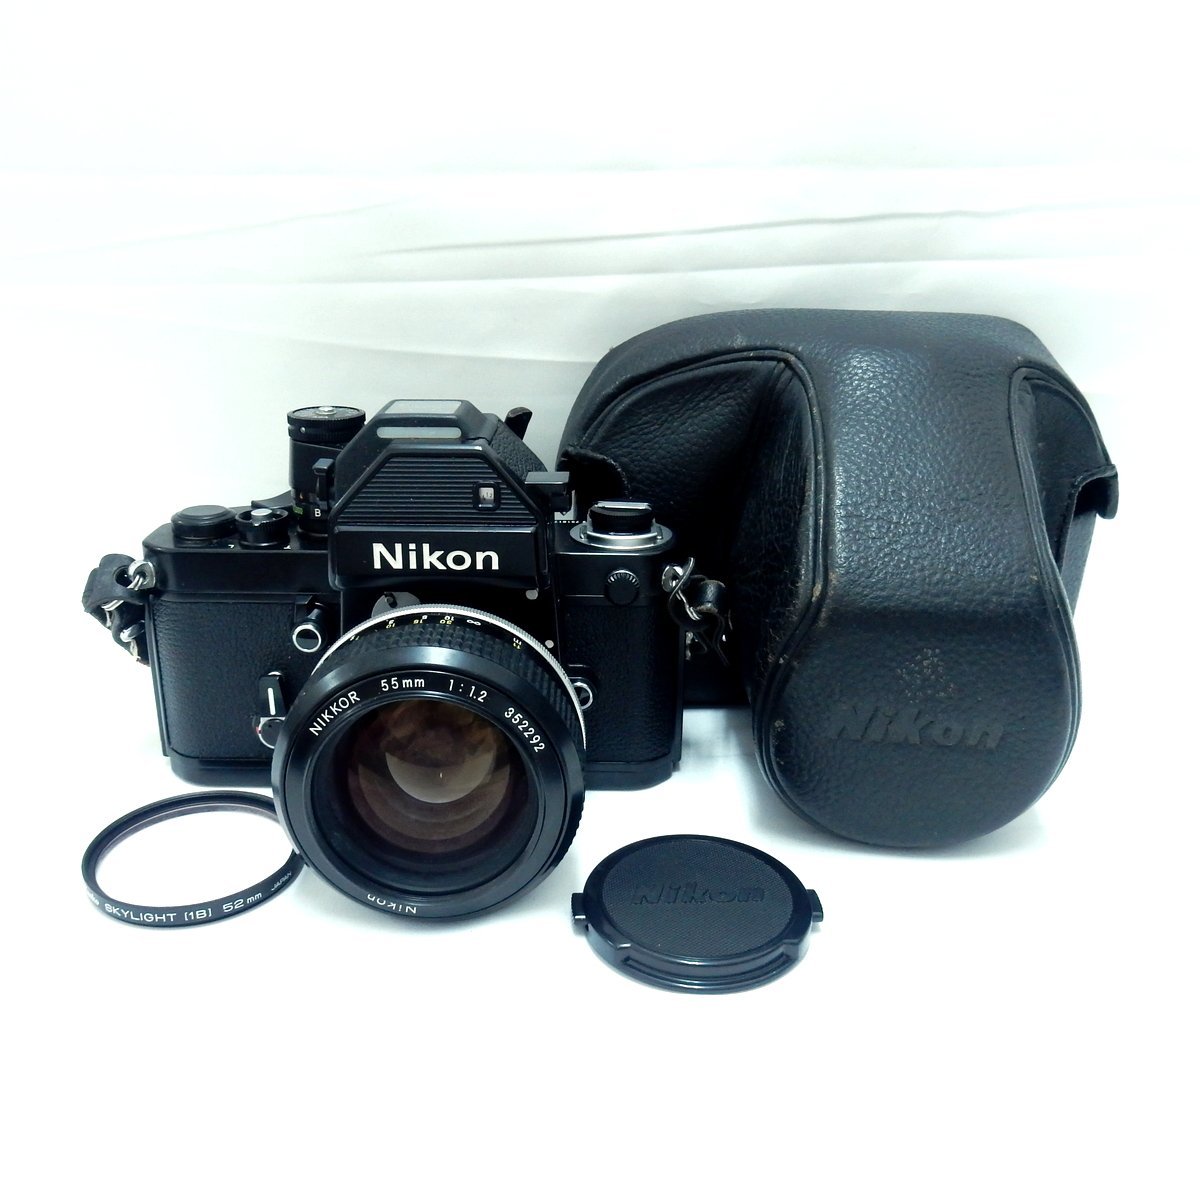 Nikon ニコン F2 ブラック フォトミック + レンズ NIKKOR 55mm F1.2